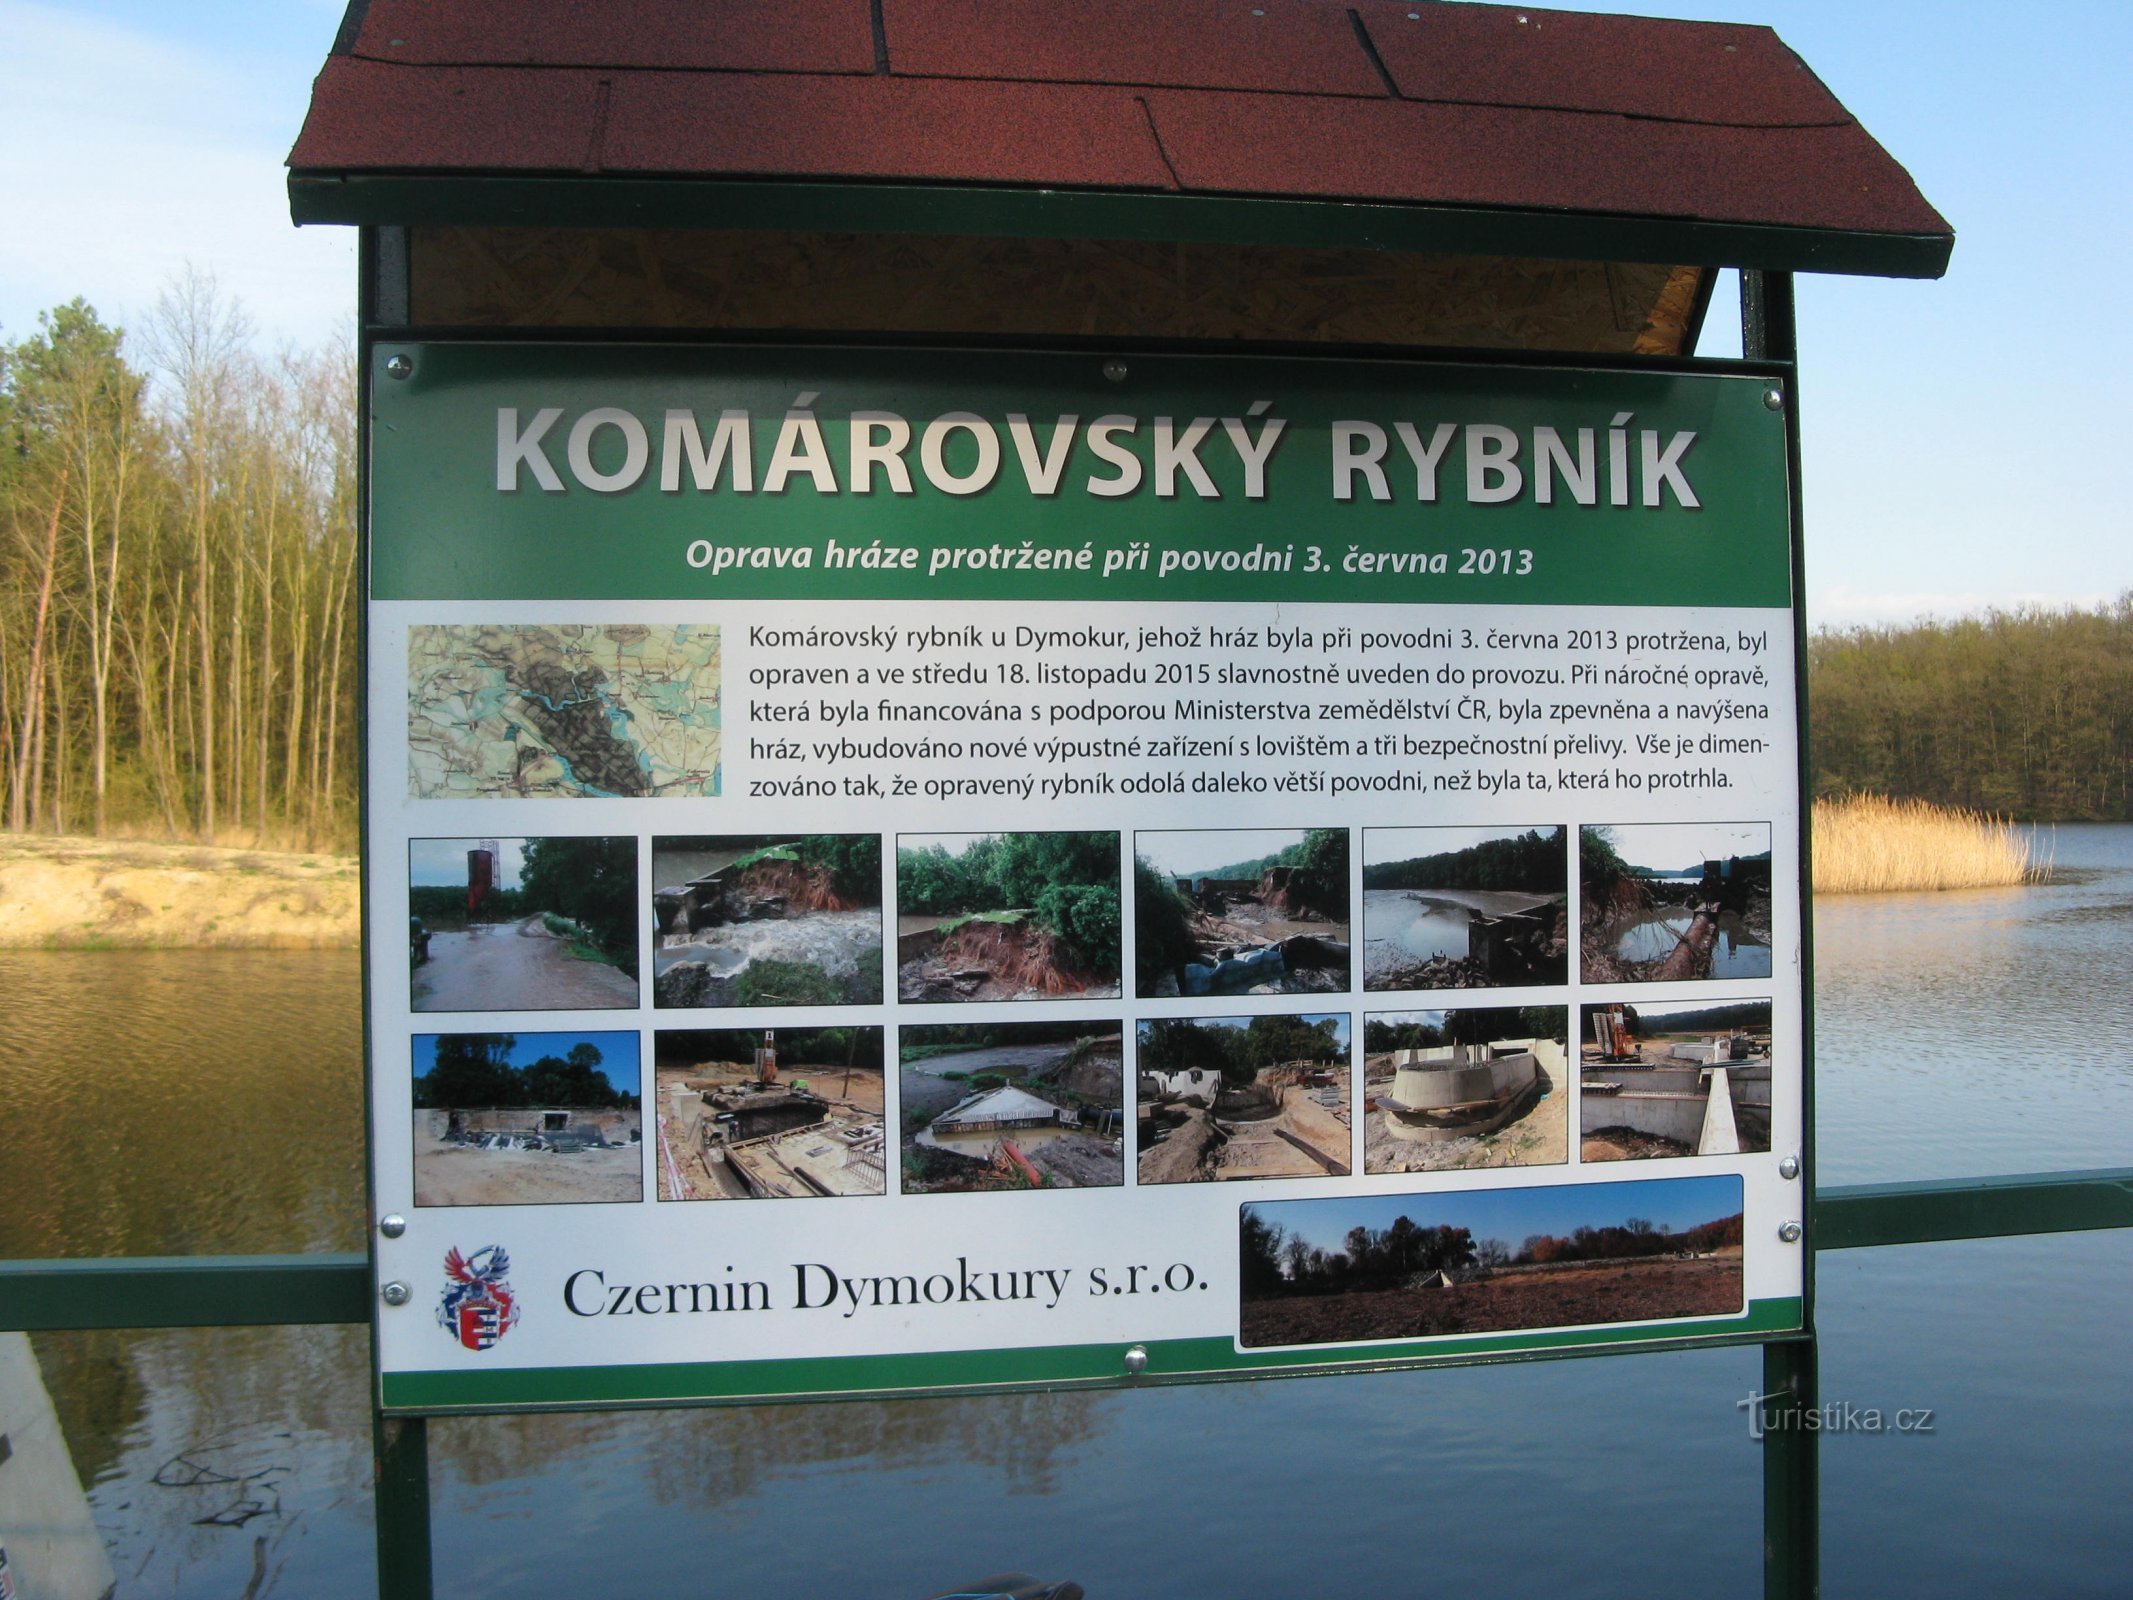 Komárovský-tó Svídnice közelében Nymburkban